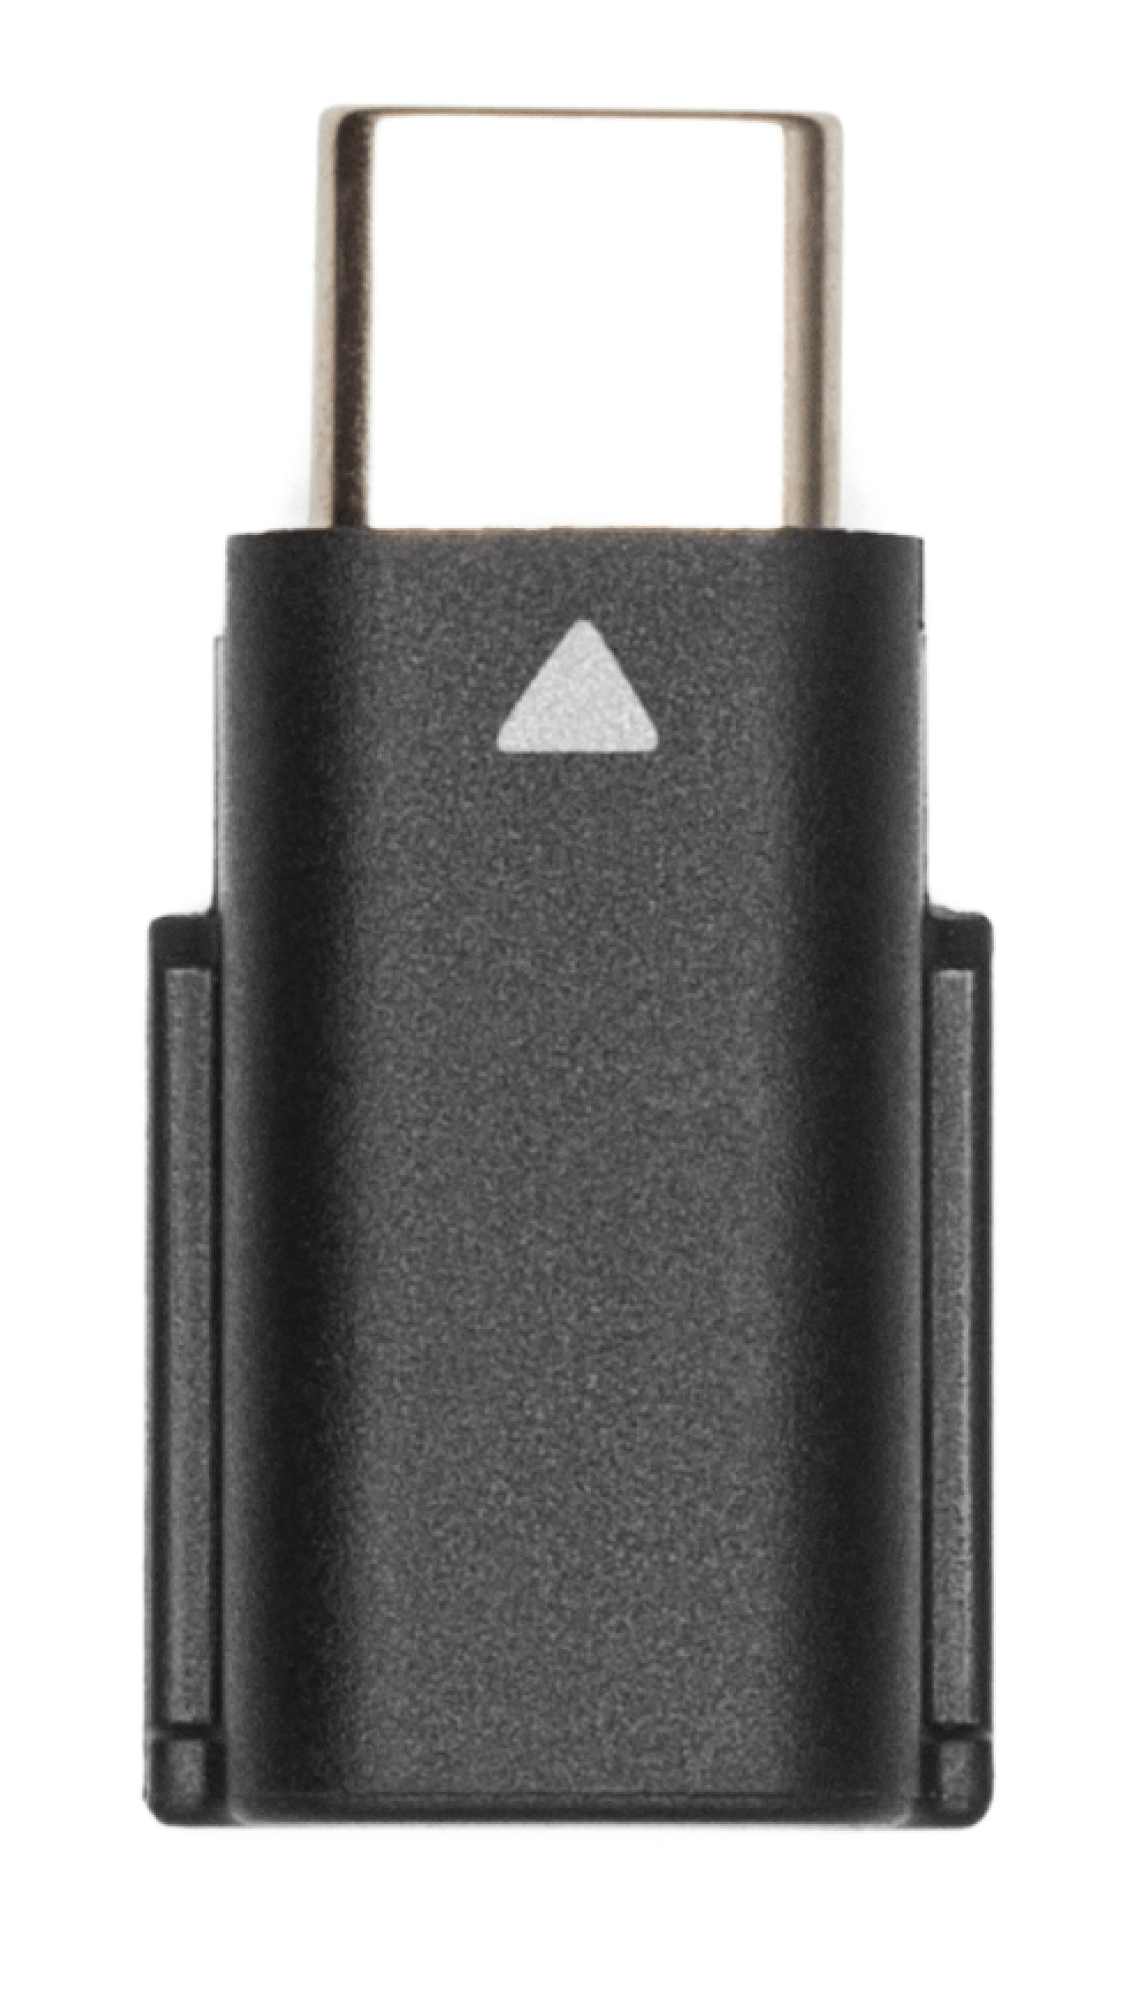 Imagem de adaptador USB-C que acompanha o produto para conexão com celular